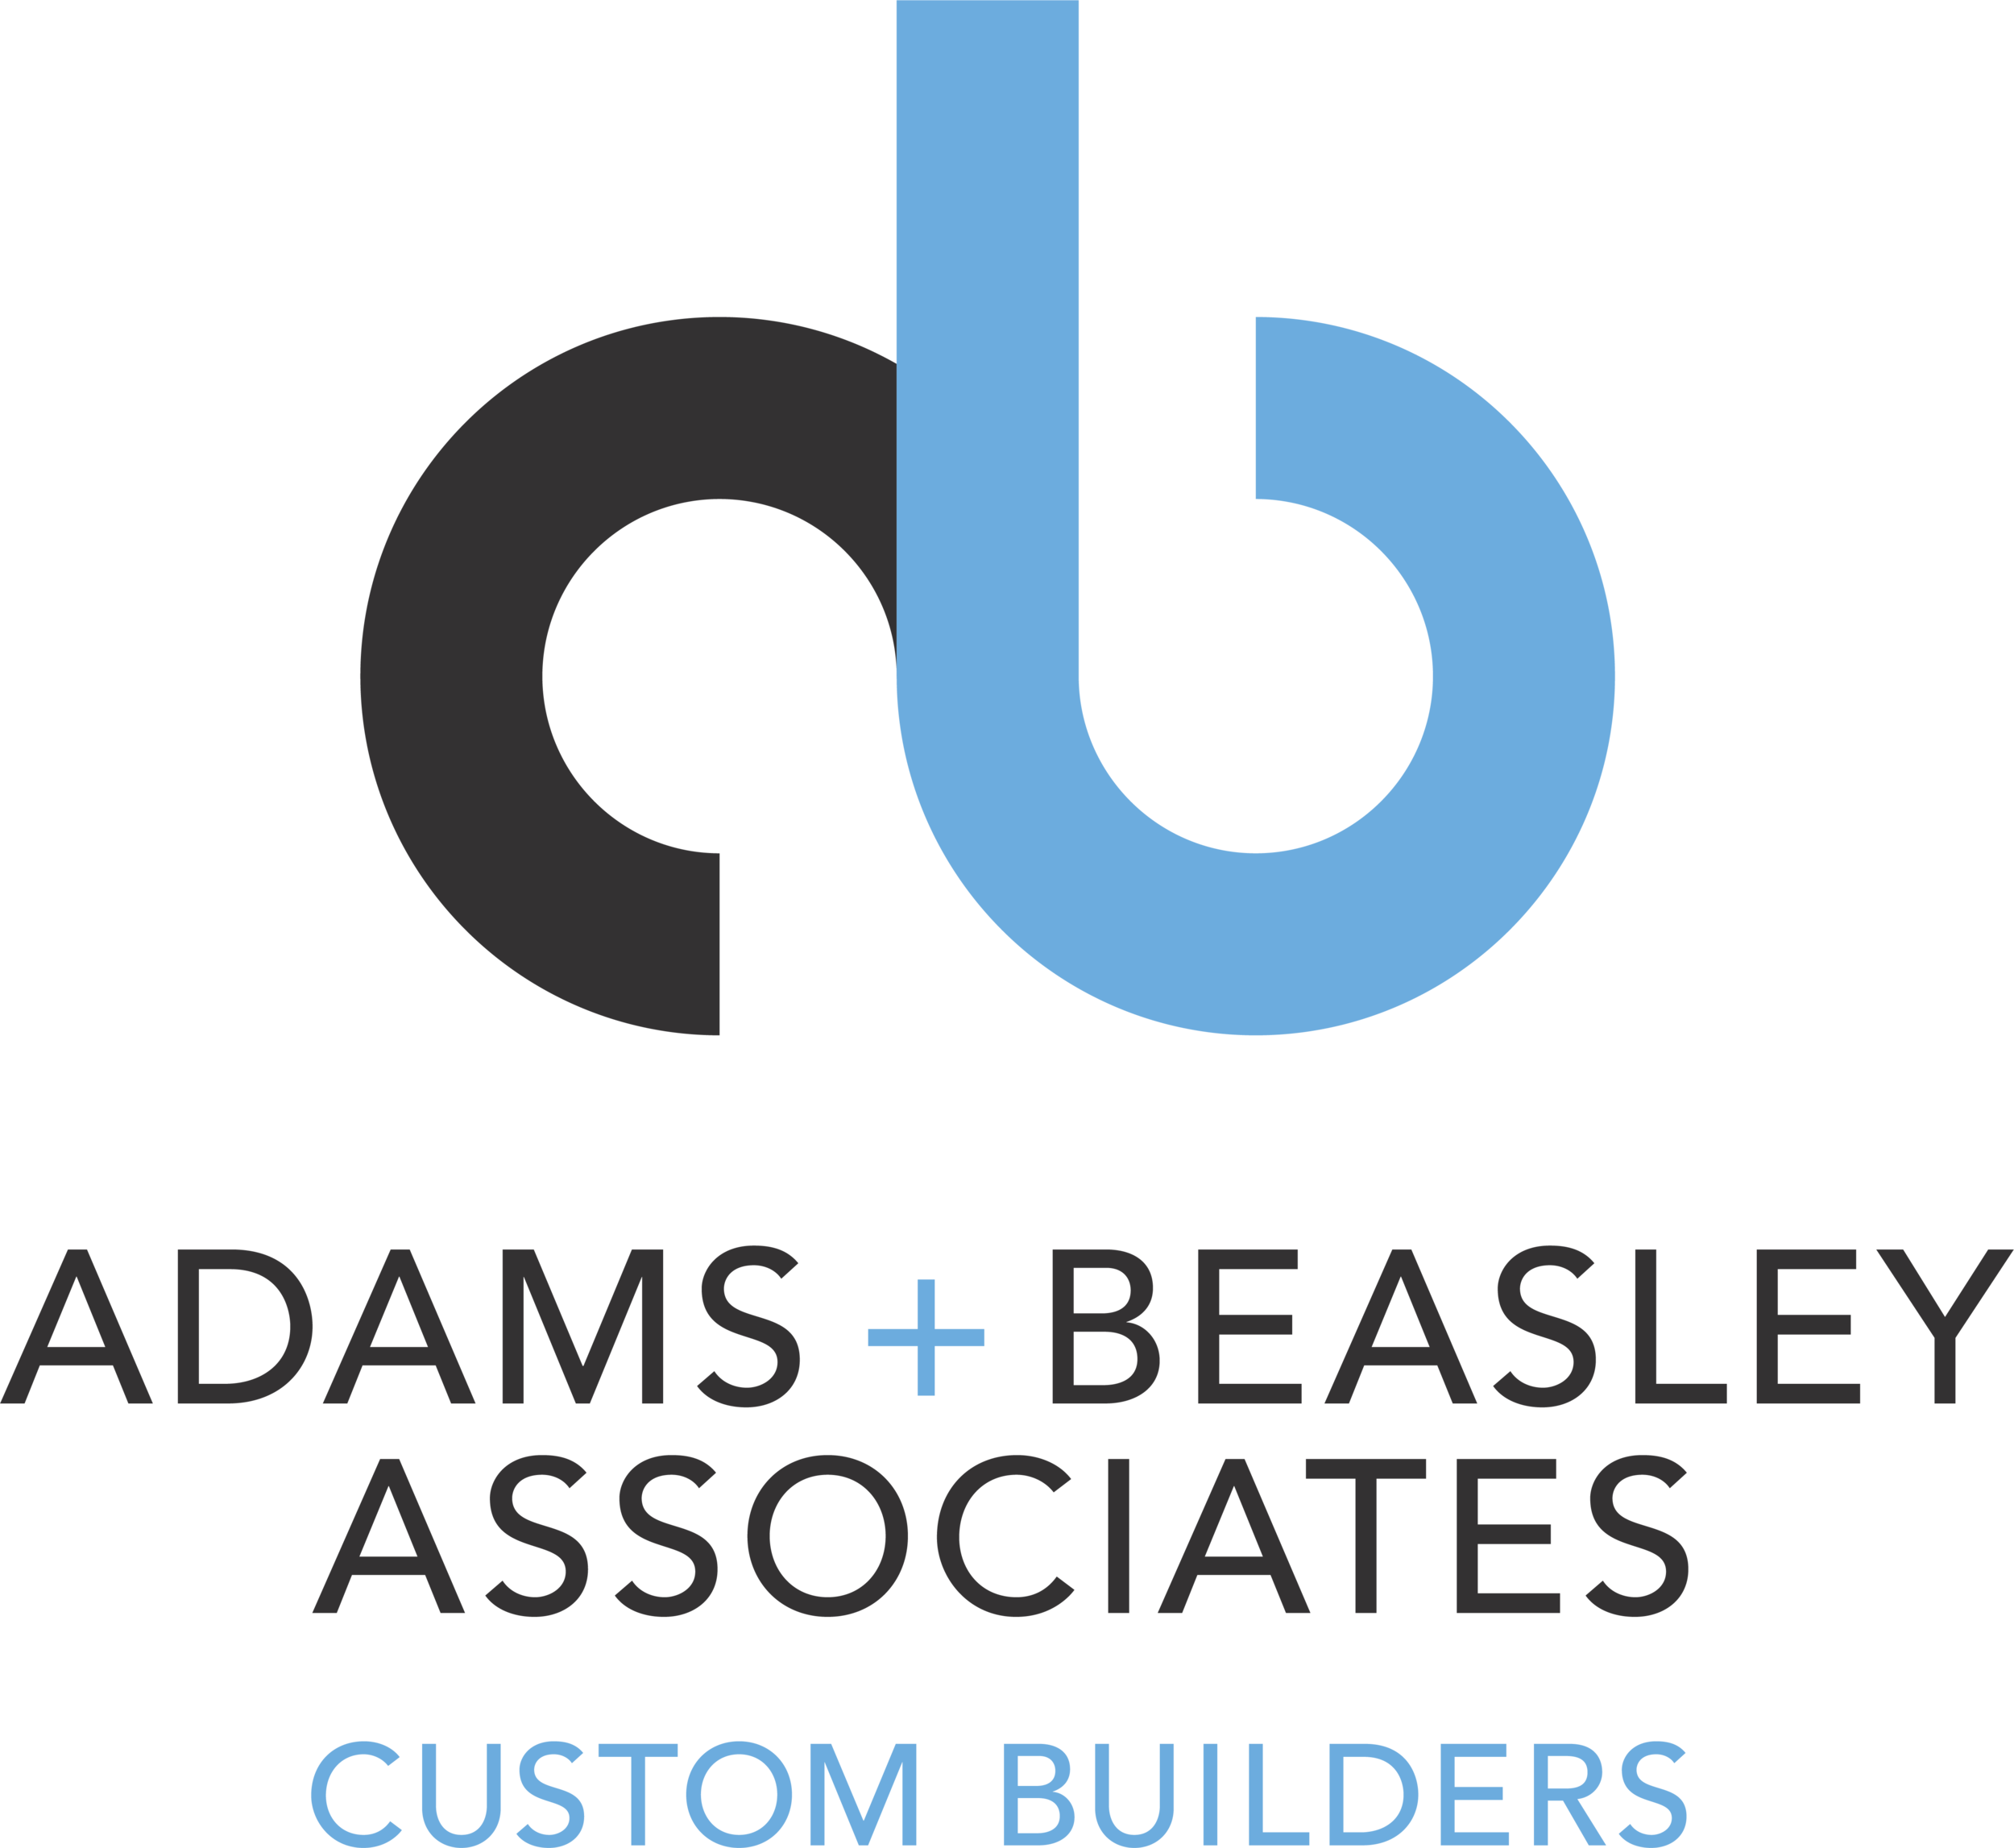 A+B logo